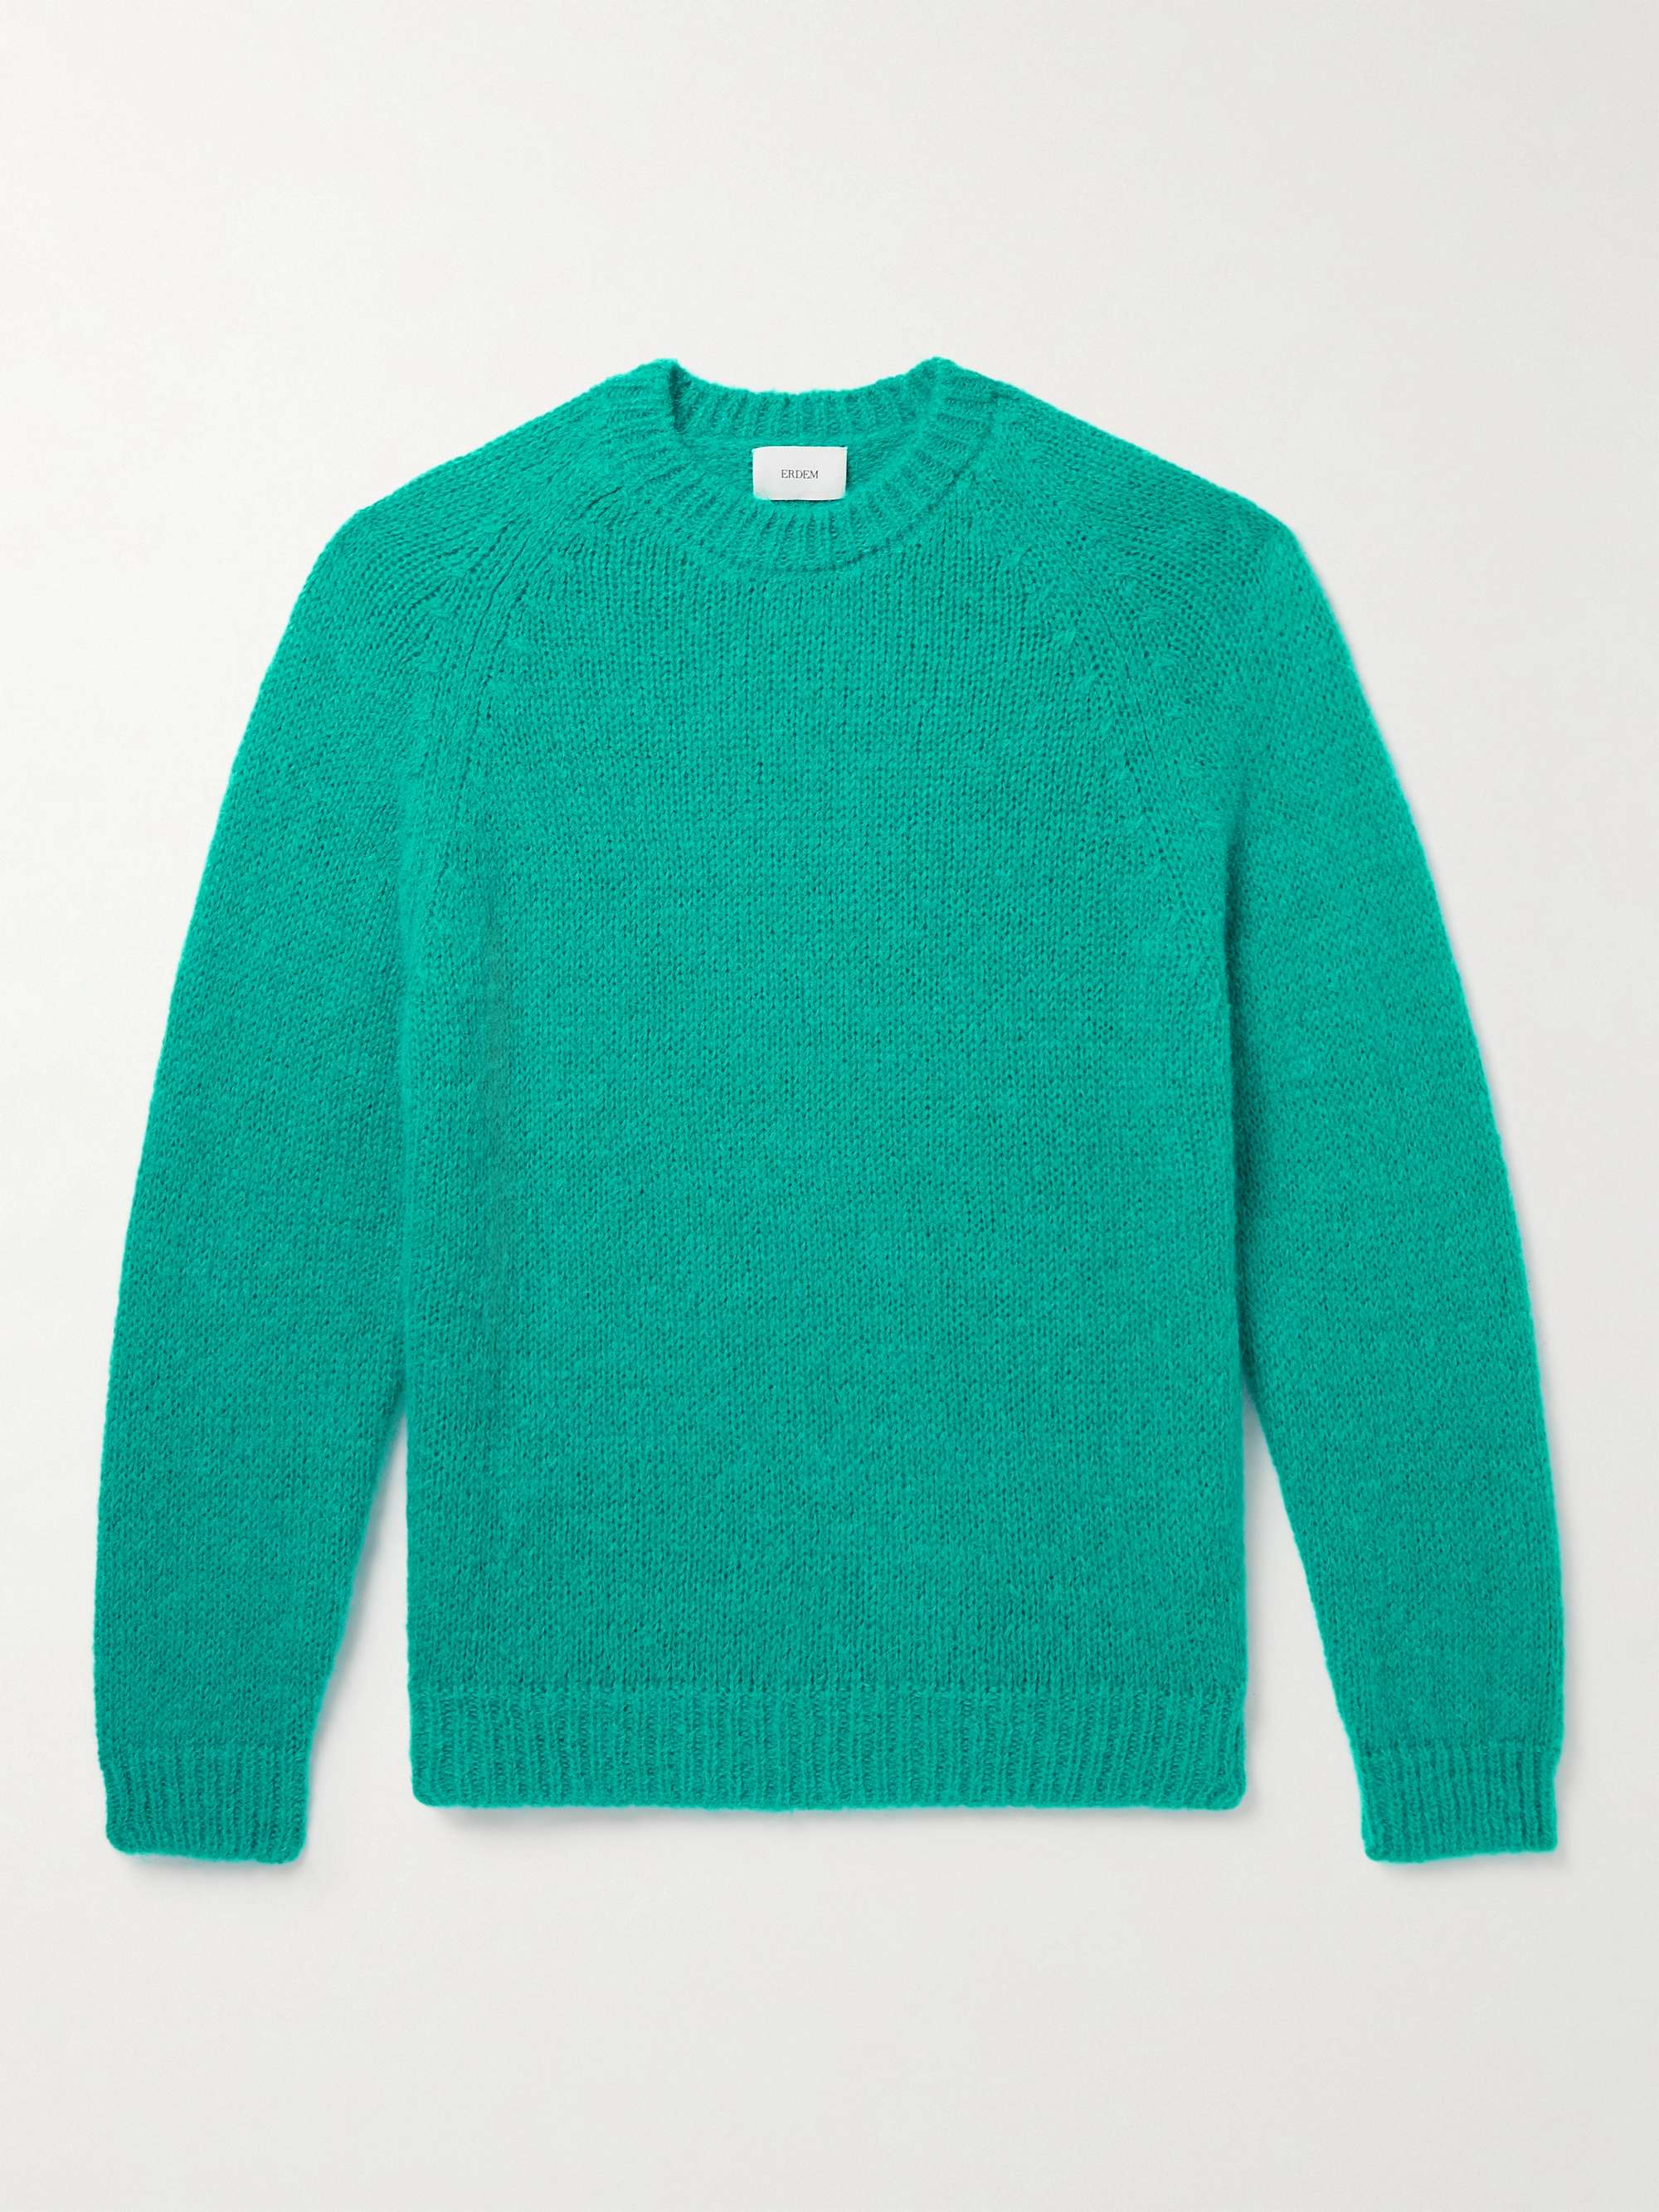 ERDEM Noel Knitted Sweater for Men | MR PORTER